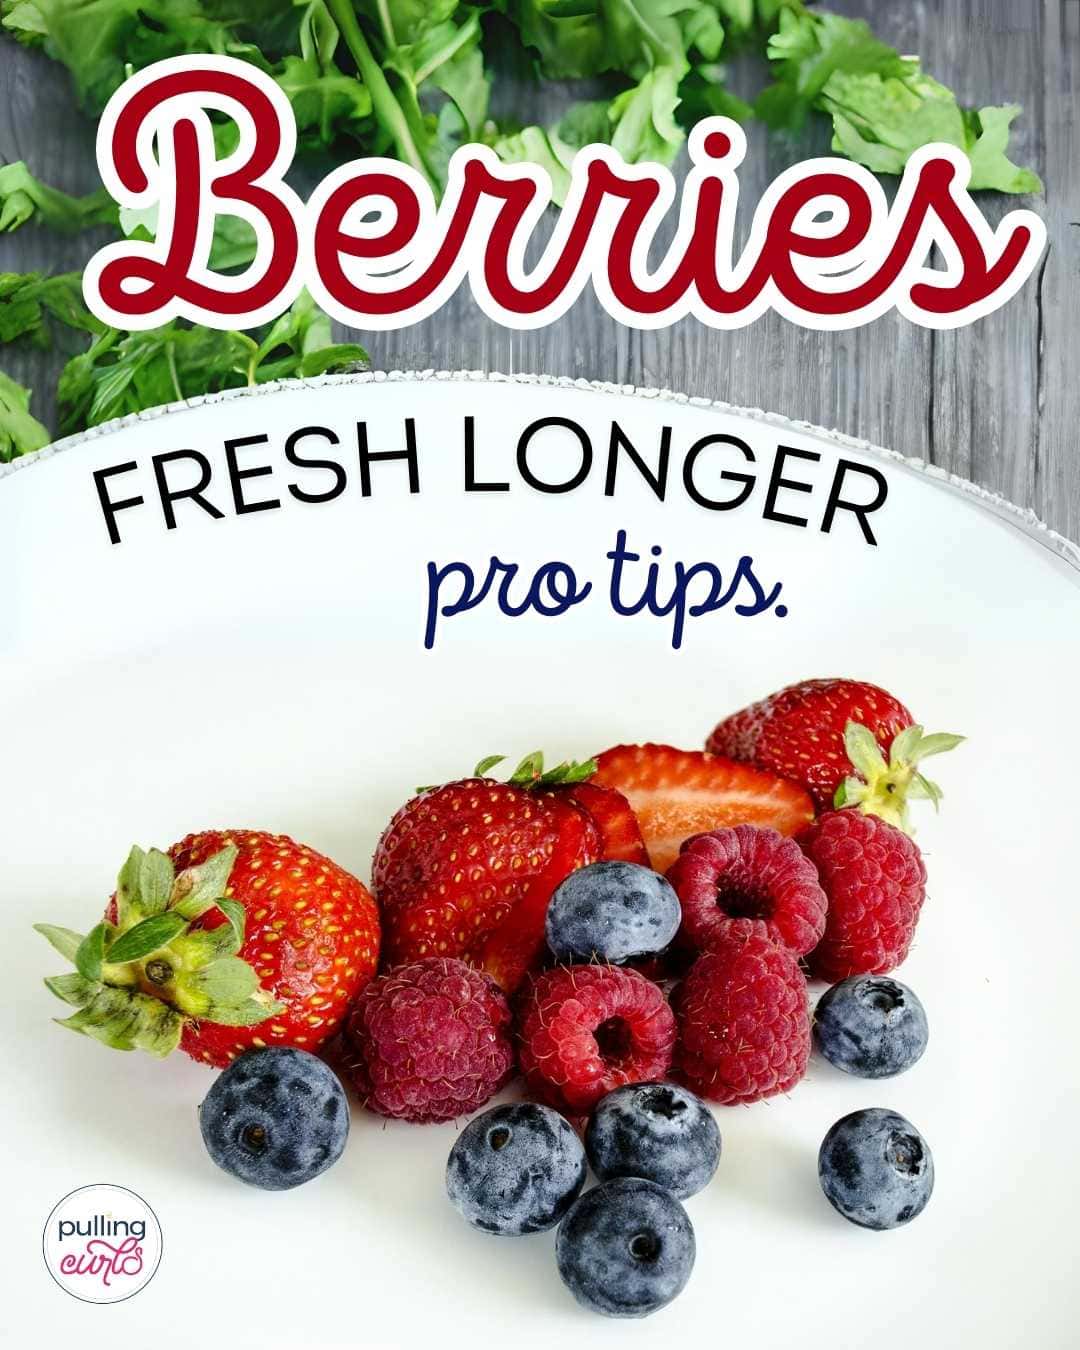 berries fresh longer/ plate of berries via @pullingcurls